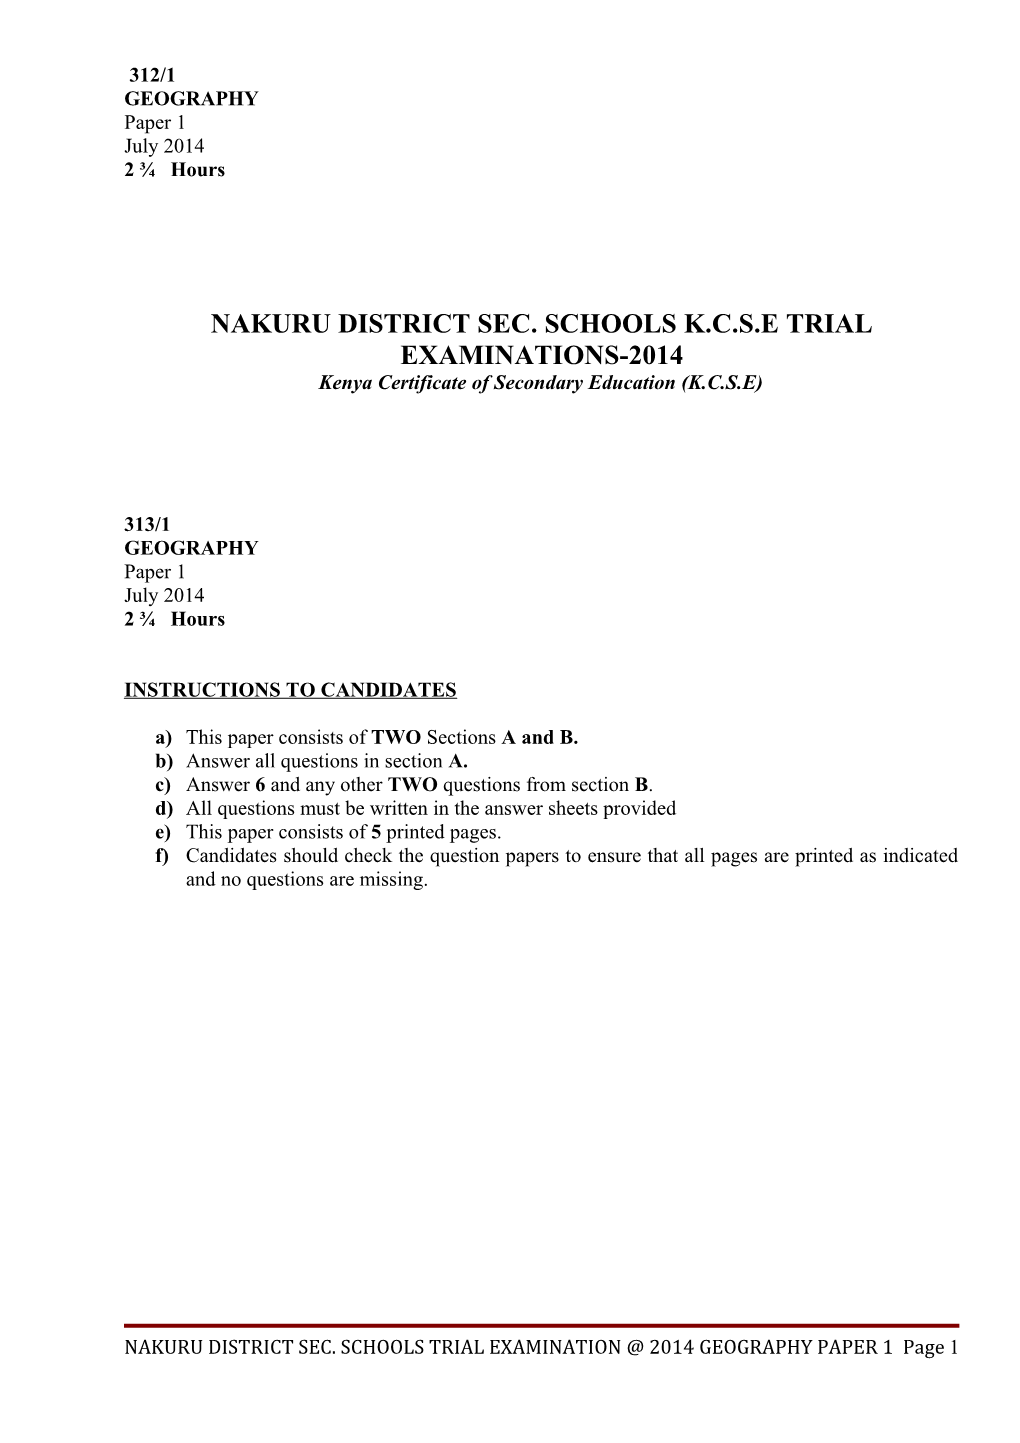 Nakuru District Sec. Schools K.C.S.E Trial Examinations-2014